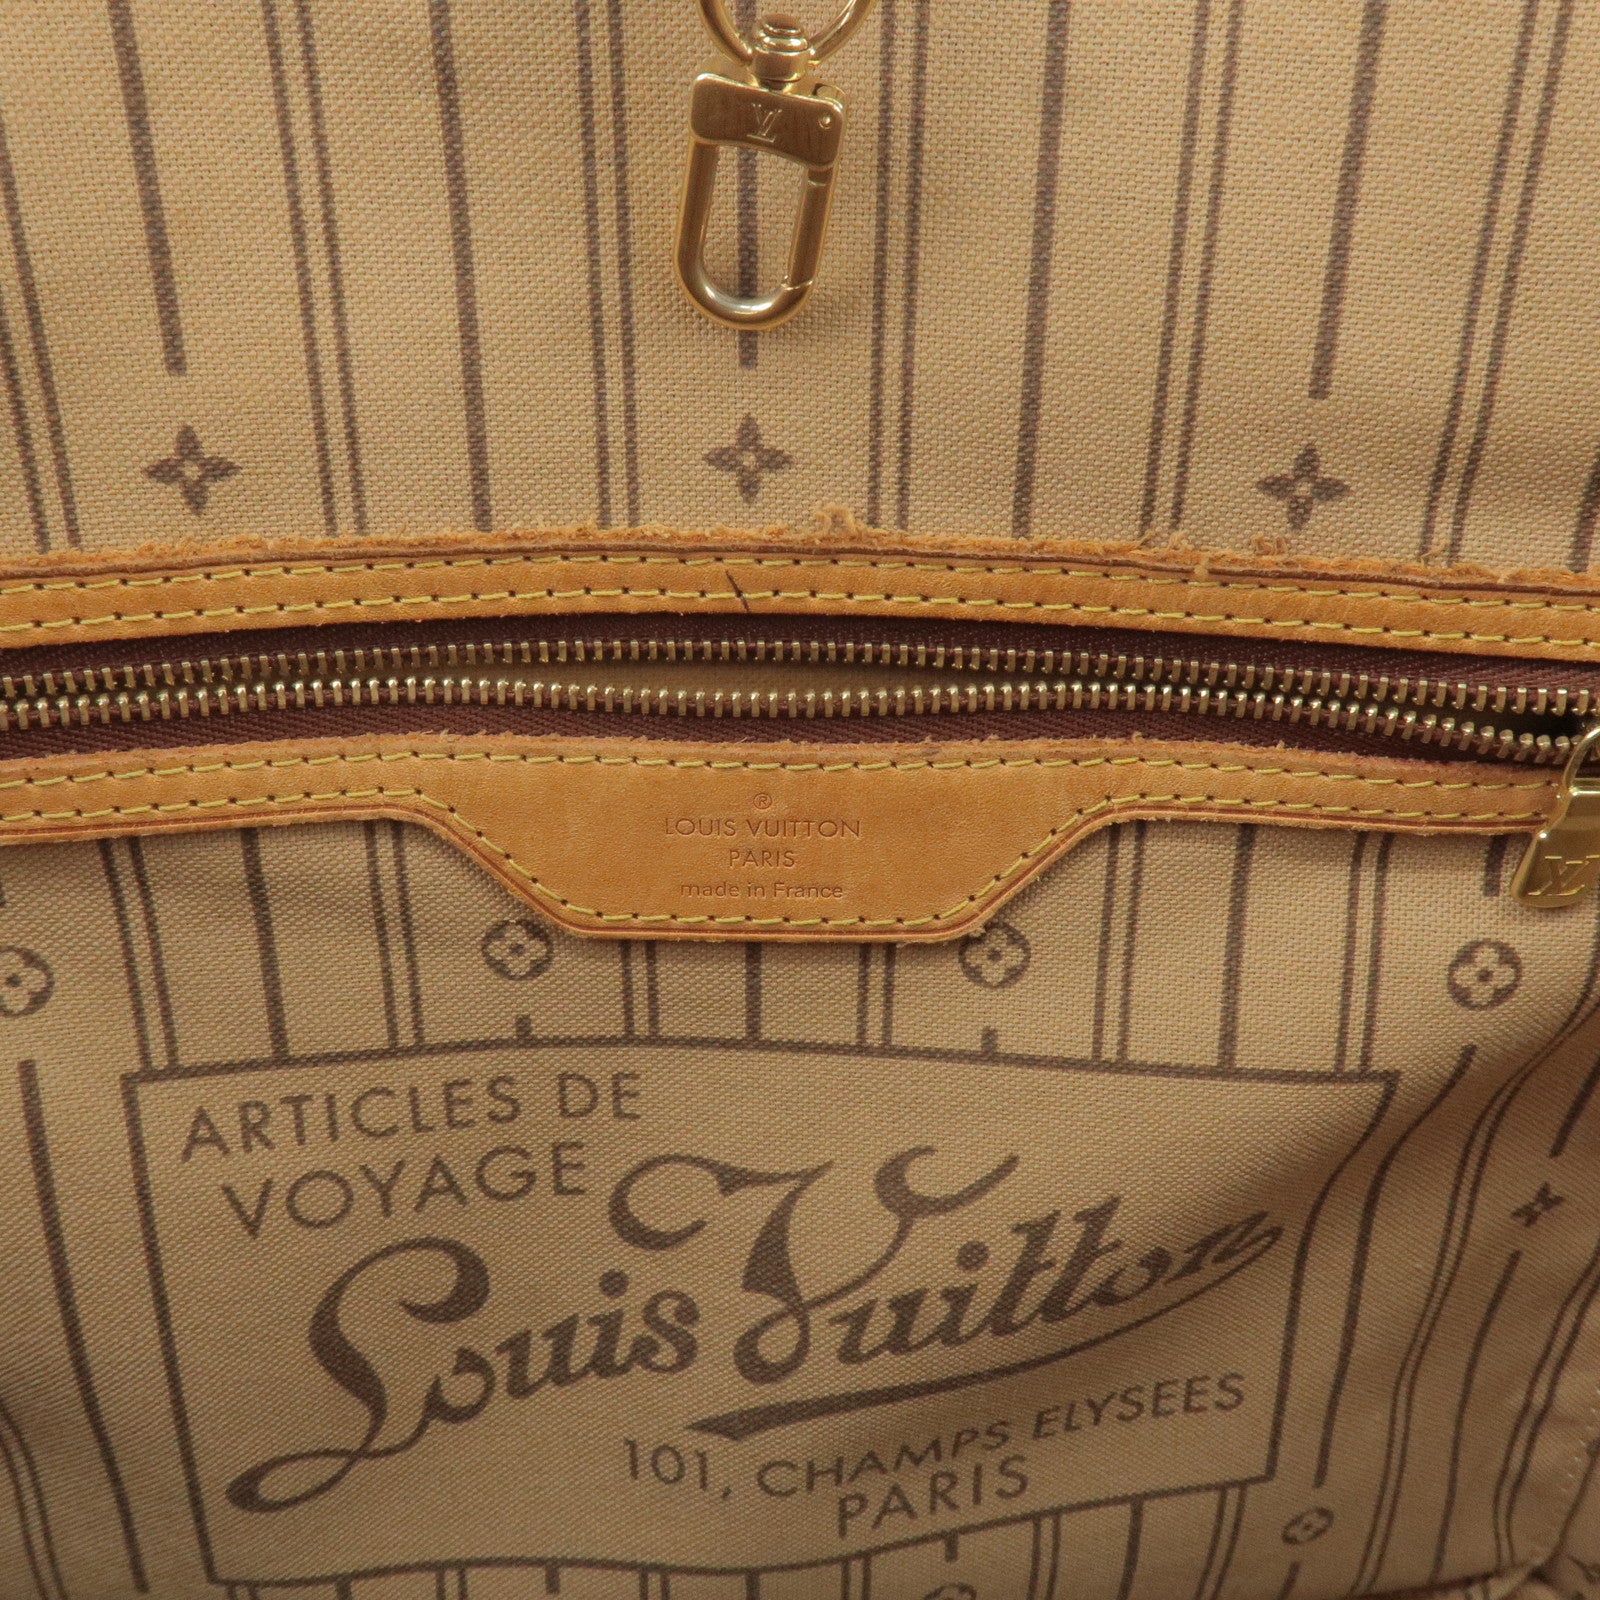 Louis Vuitton, Bags, Articles Description Voyage Swiss Vuitton 1